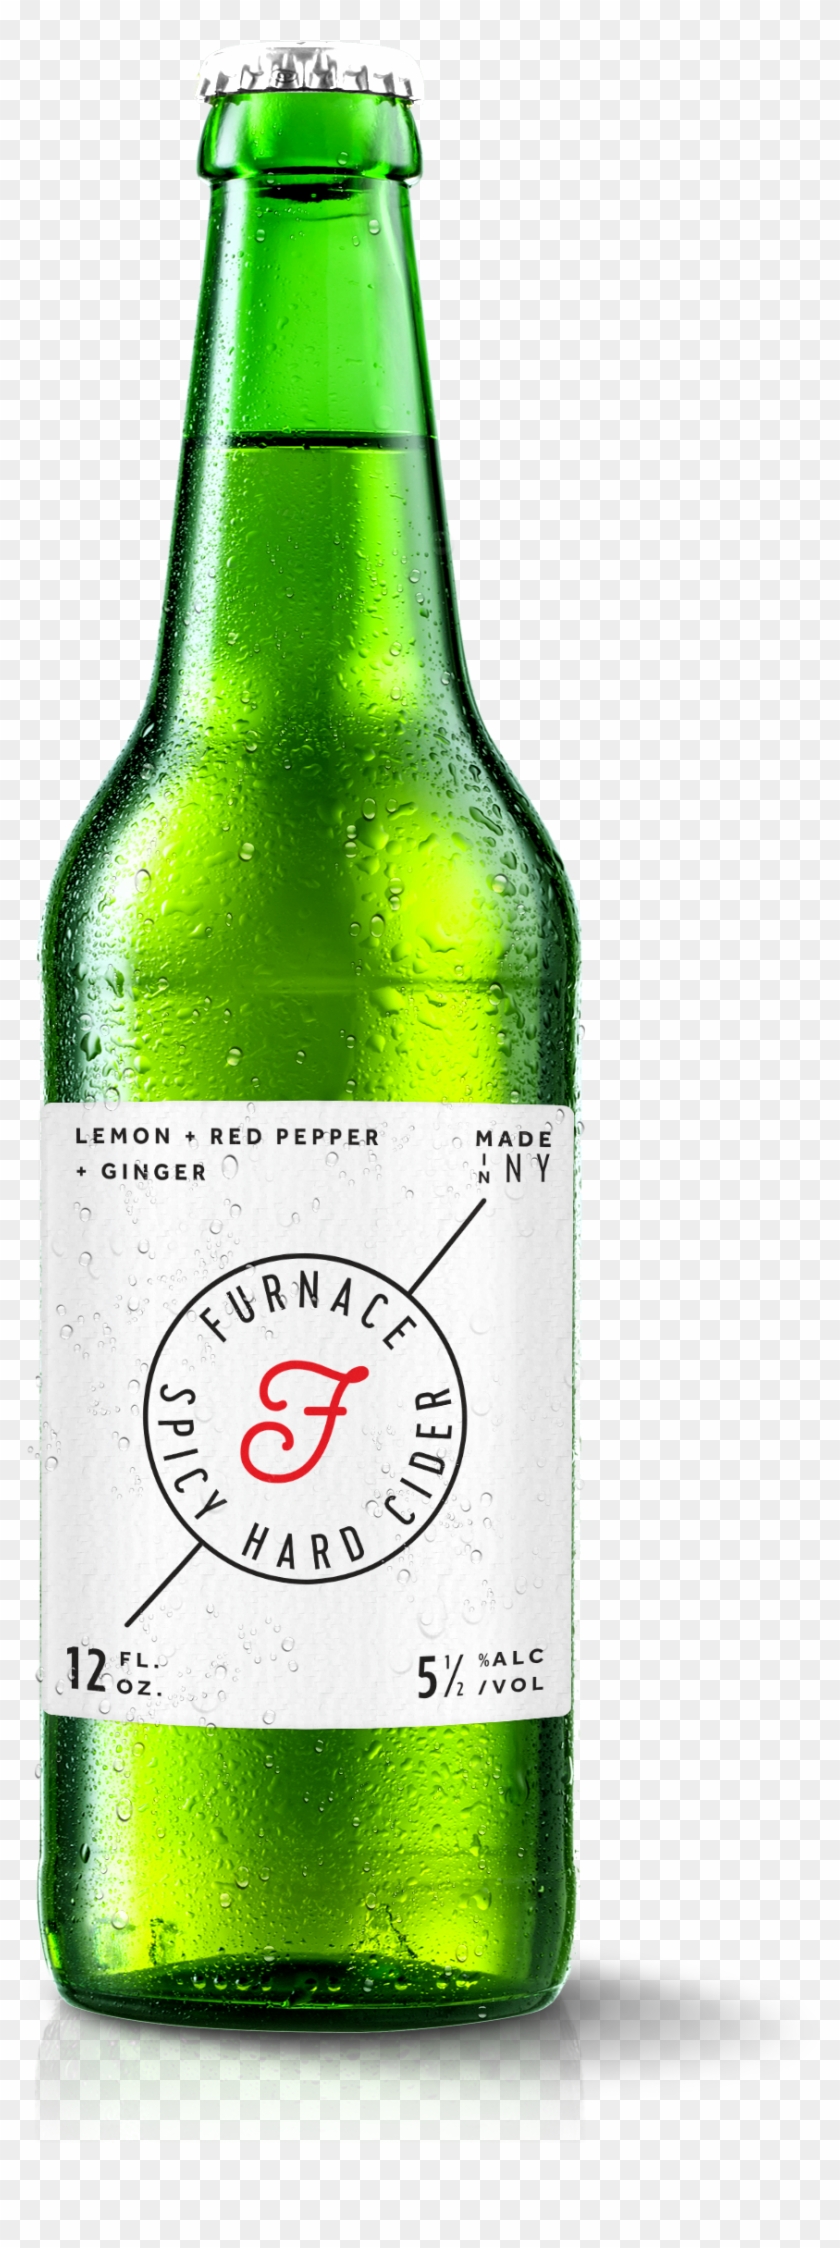 Download A Large Image Of Furnace Cider Bottle And - Beer Bottle #581708